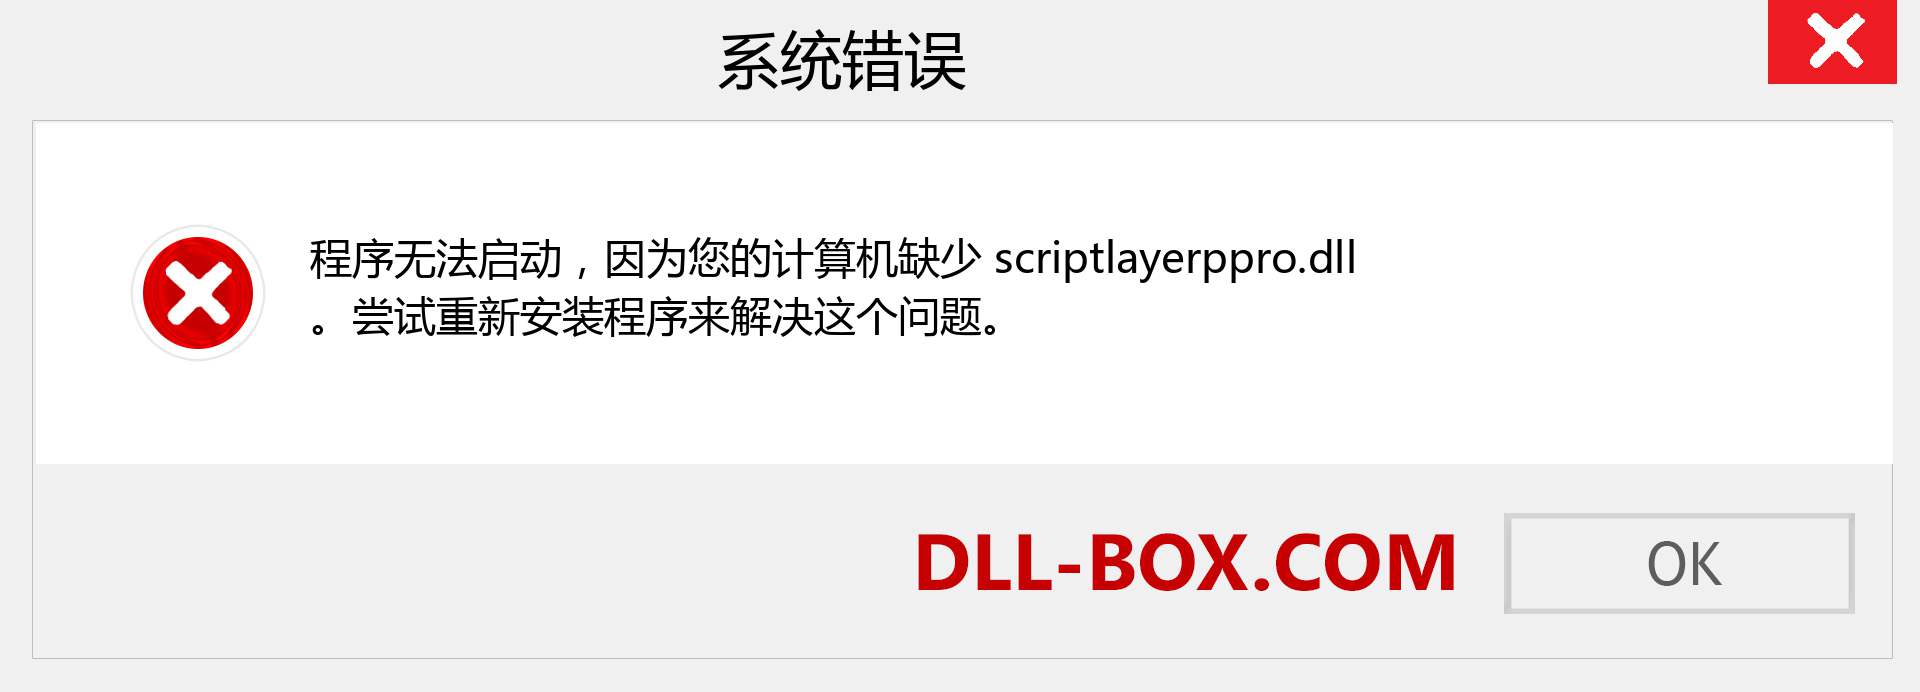 scriptlayerppro.dll 文件丢失？。 适用于 Windows 7、8、10 的下载 - 修复 Windows、照片、图像上的 scriptlayerppro dll 丢失错误